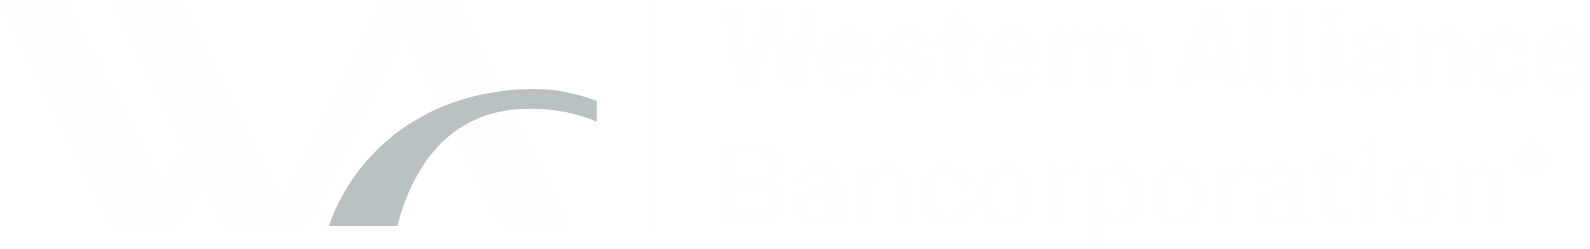 Western Alliance Bancorporation
 logo grand pour les fonds sombres (PNG transparent)